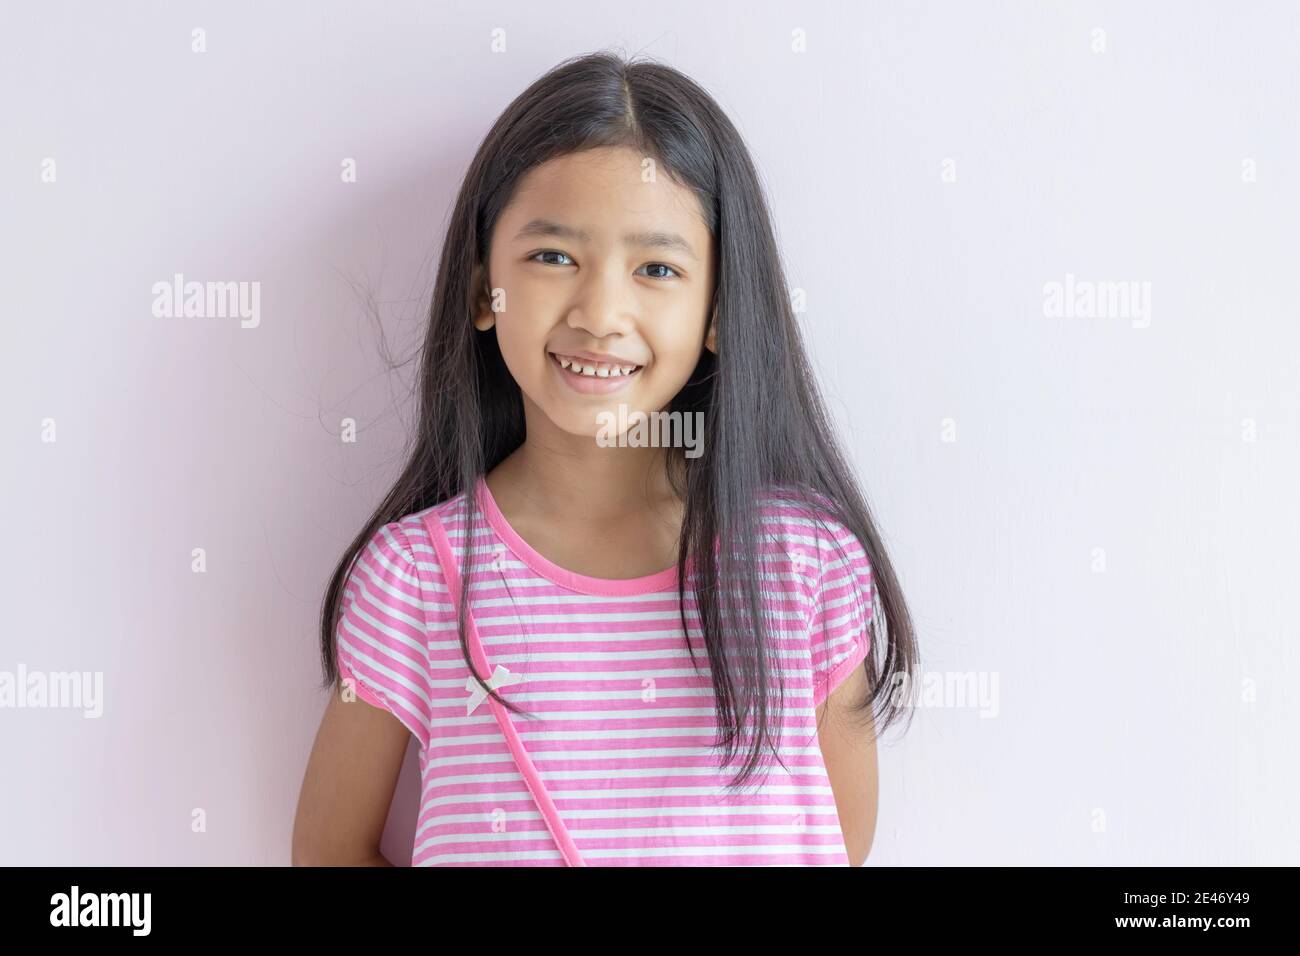 Asiatische kleine Mädchen lächeln hell. Kinder tragen rosa Kreuz weiße Kleider und lange schwarze Haare. Das Kind schaut nach vorne und lächelt fröhlich. Porträts Stockfoto